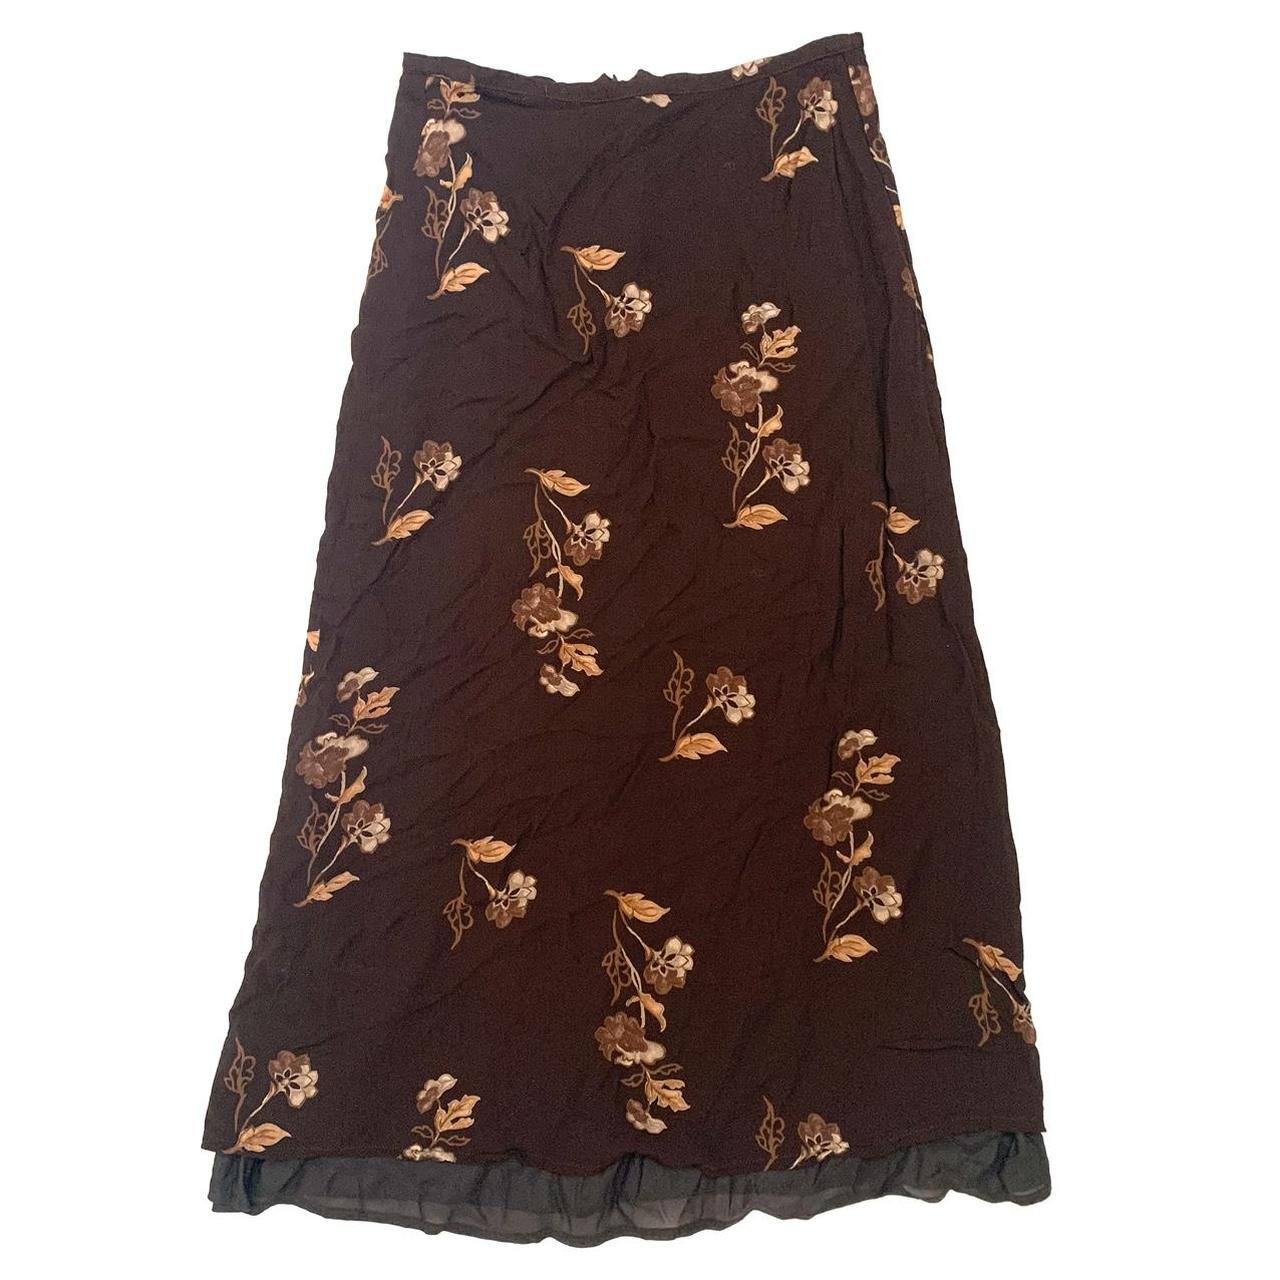 vintage brown floral maxi skirt brand: express size... - Depop